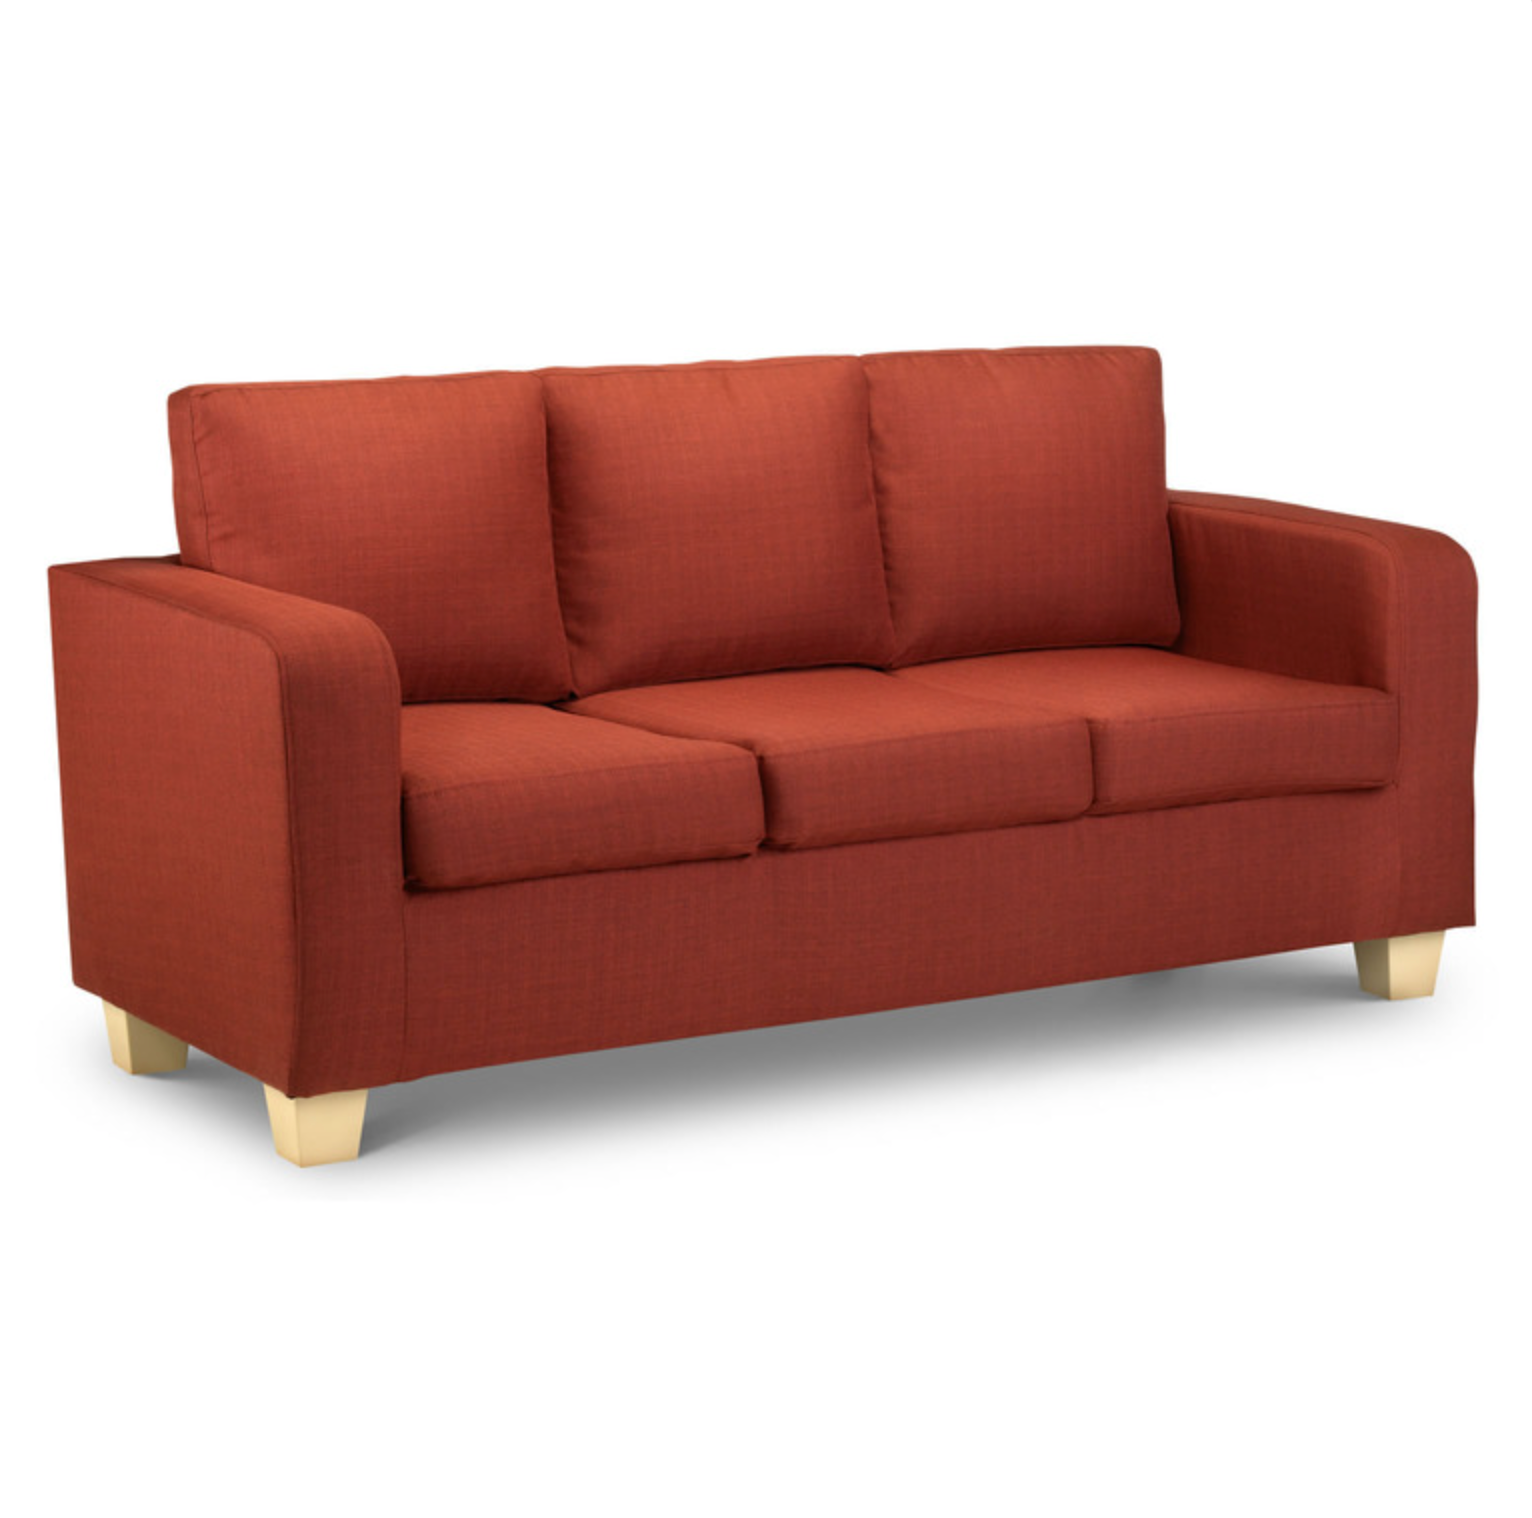 Maxine 3 Seater Sofa Turin Red Fabric